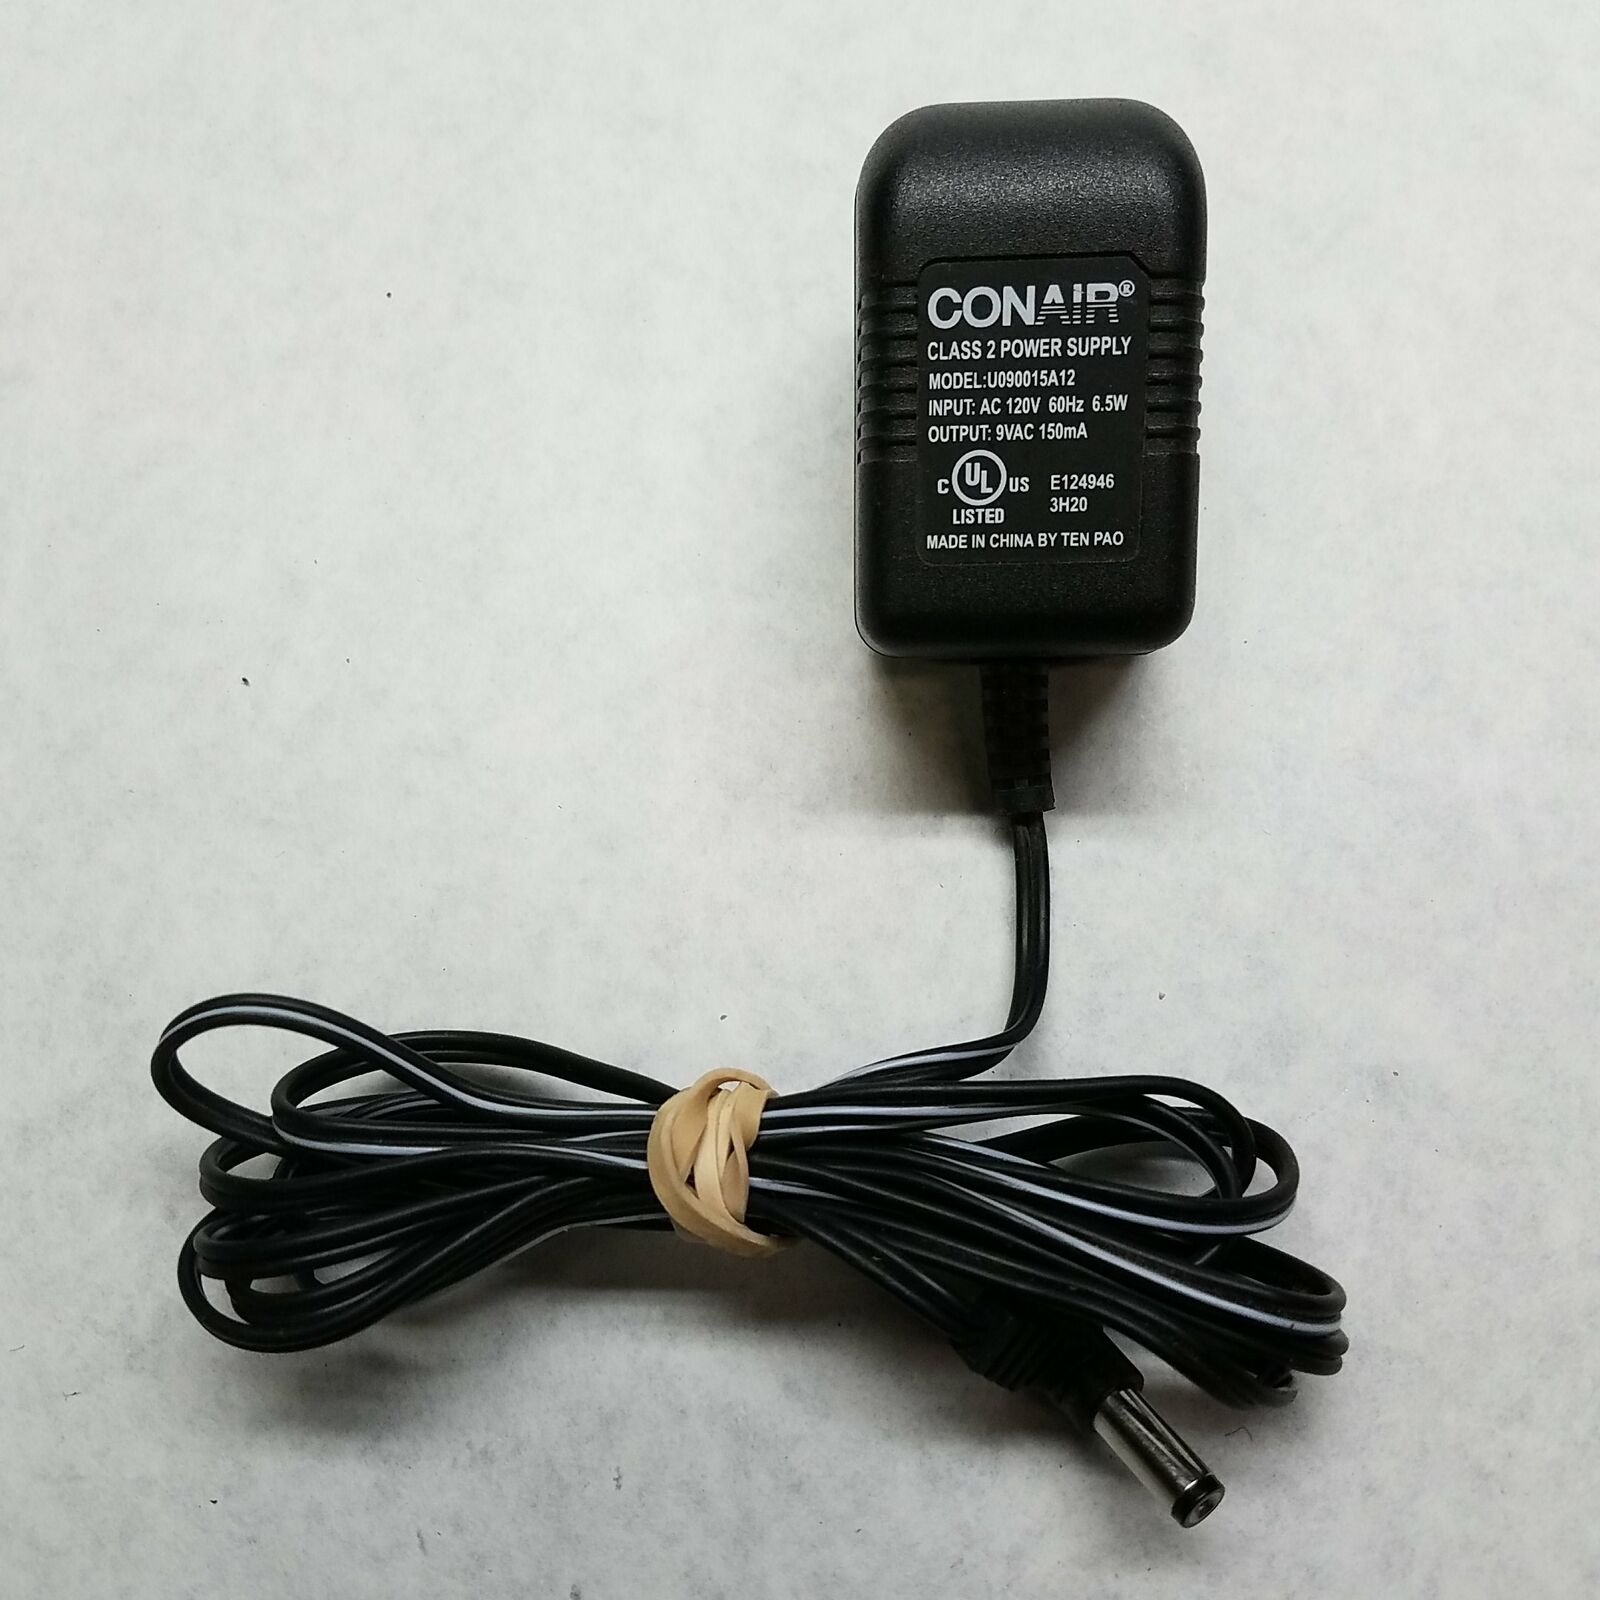 conair class 2 power supply Class 2 AC Adapter Model U090015A12 Output 9VAC model:U910015A12 input: